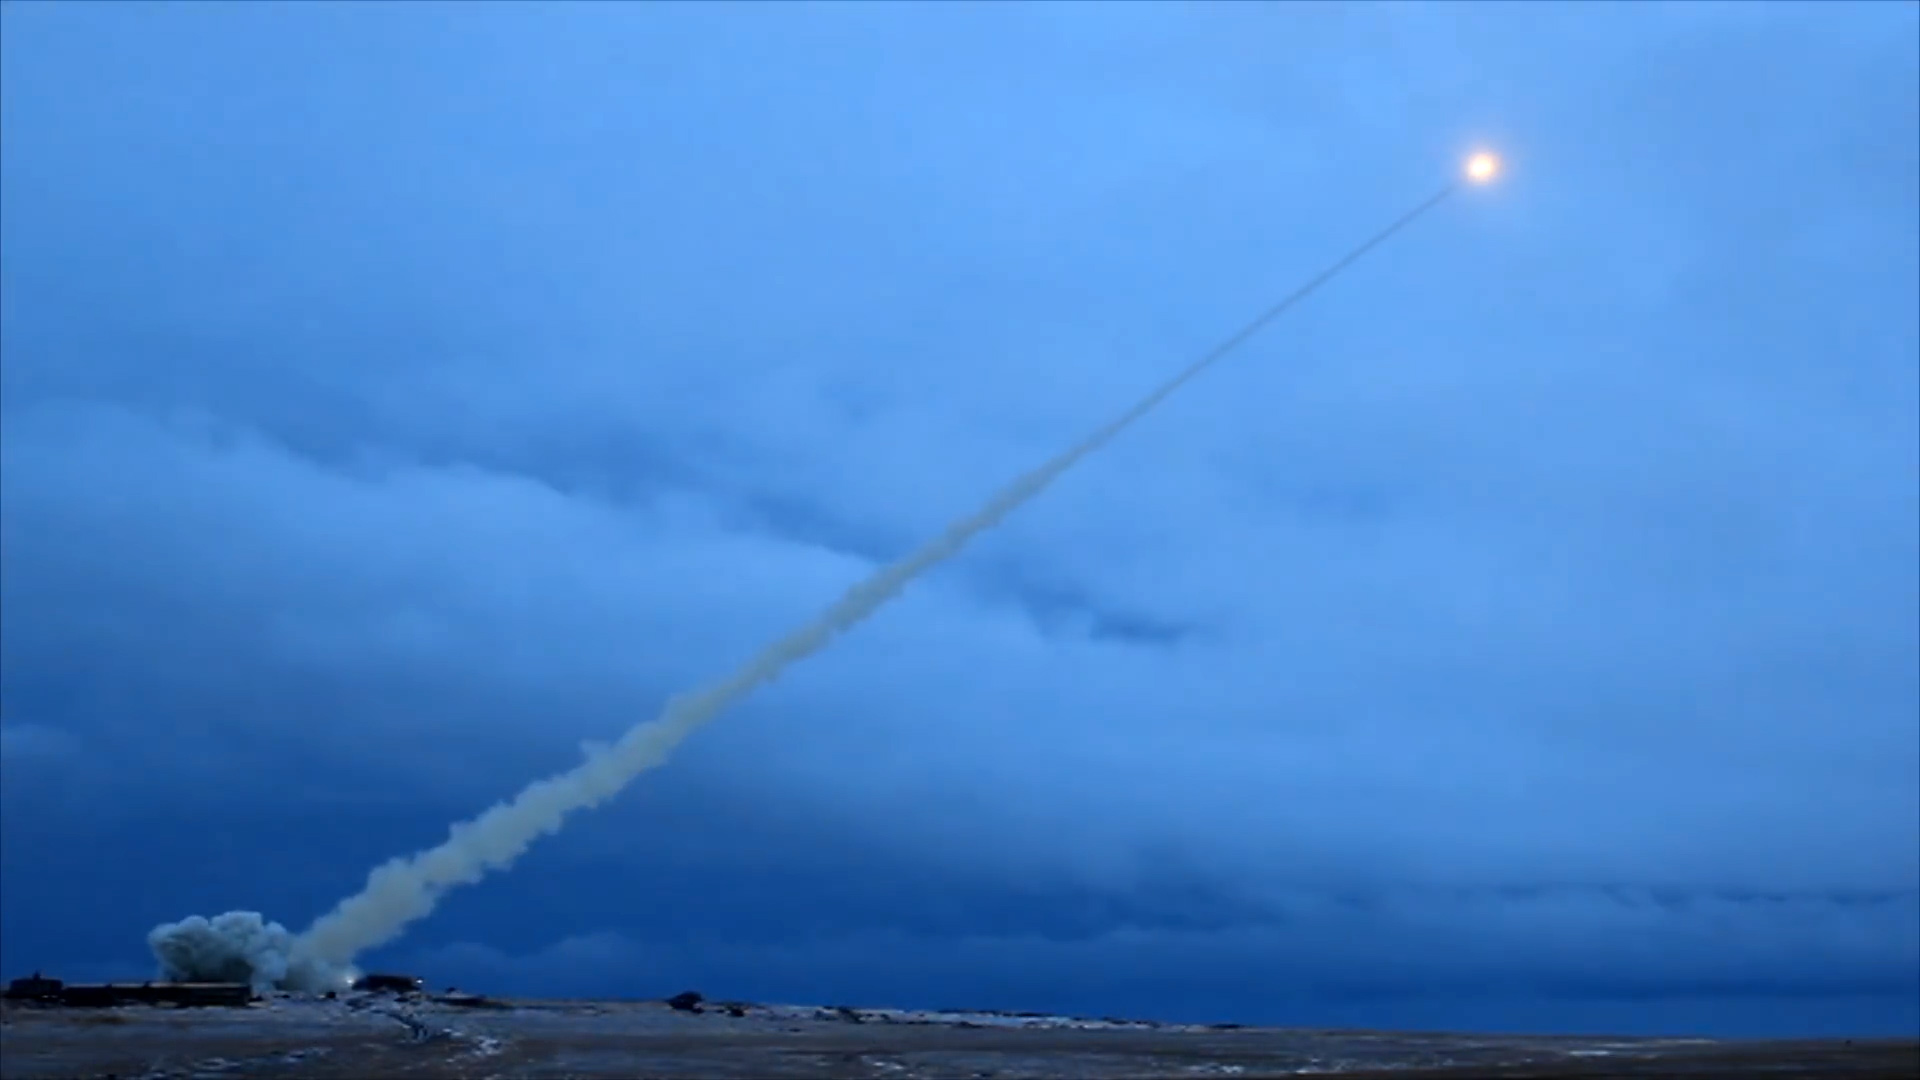 De Russen bereiden zich mogelijk voor op het testen van de nucleair aangedreven SSC-X9 Skyfall intercontinentale kruisraket - deze raket heeft nog nooit een afstand van meer dan 35 km afgelegd en de vorige 13 tests zijn mislukt en hebben 7 dodelijke slach-9